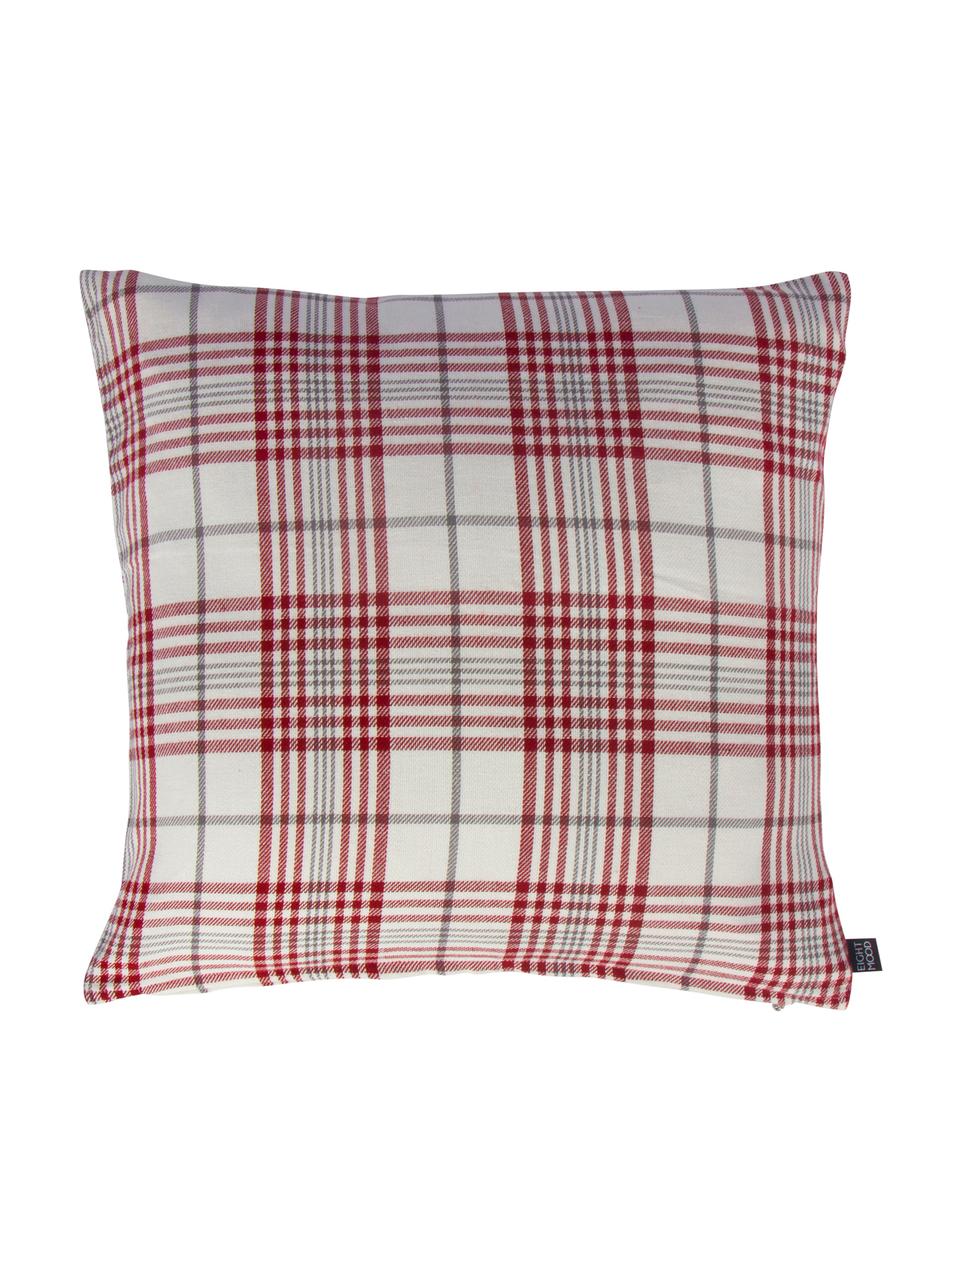 Poszewka na poduszkę Siv, 100% bawełna, Czerwony, beżowy, antracytowy, S 50 x D 50 cm